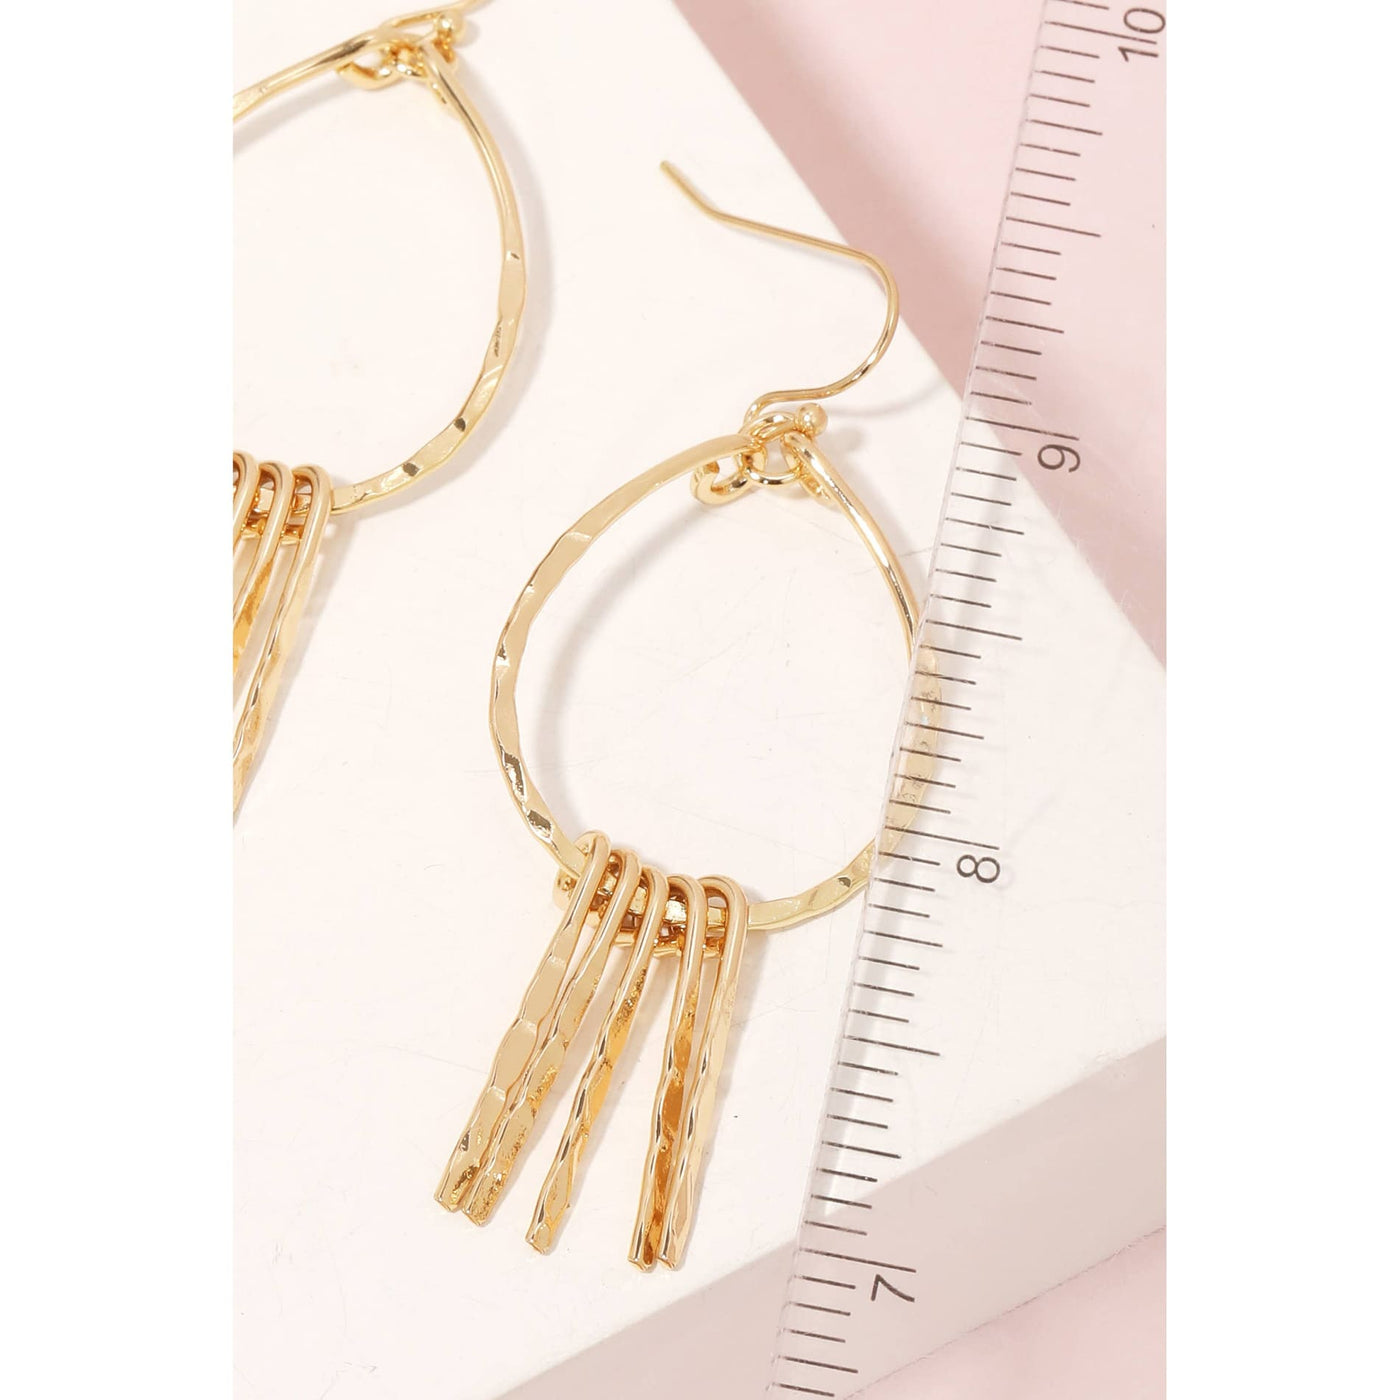 Metallic Bar Fringe Teardrop Earrings - Gold - 190 Jewelry